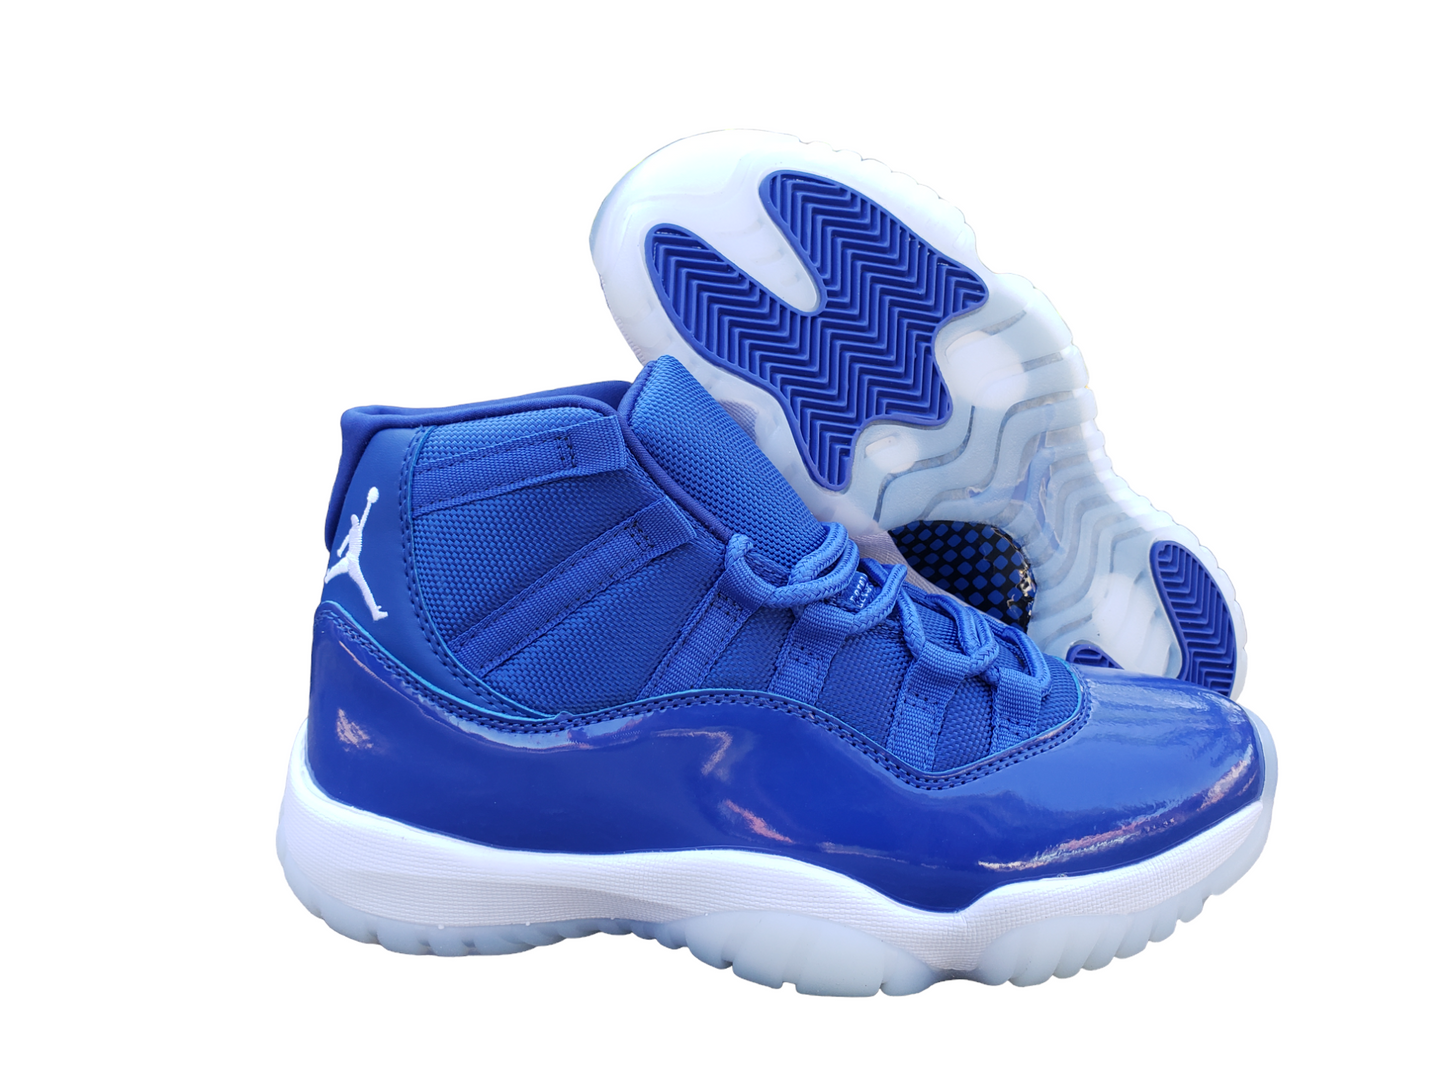 Jordan 11 All Blue